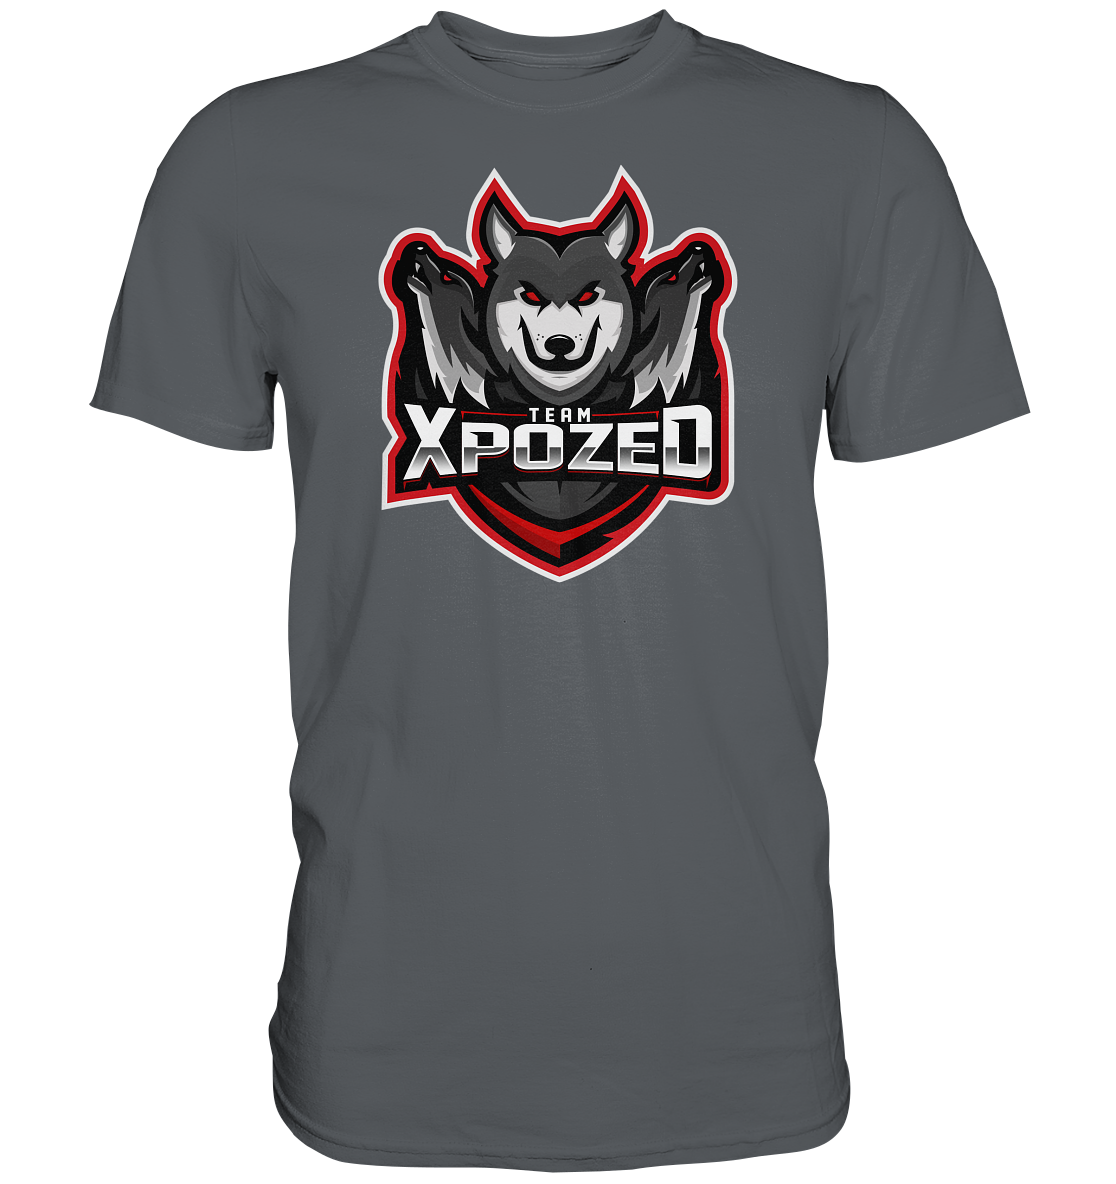 TEAM XPOZED - Basic Shirt